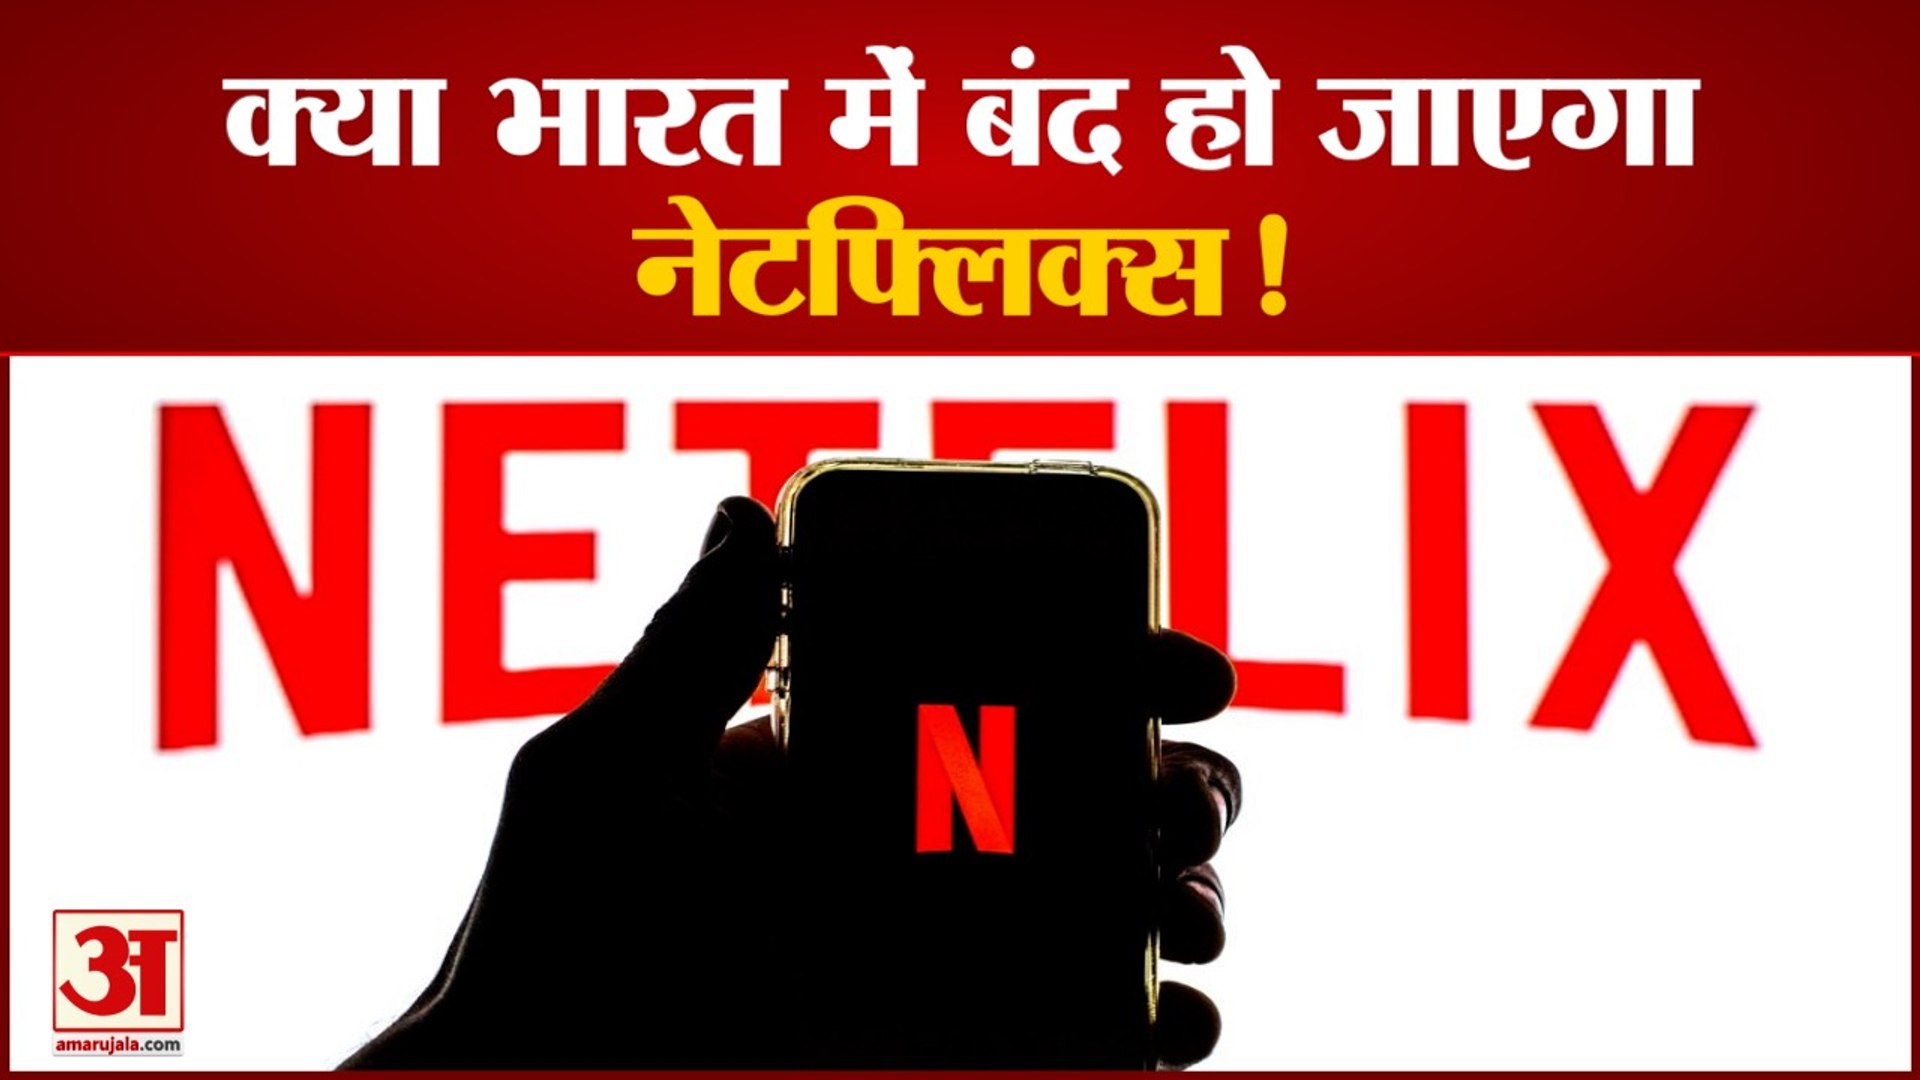 नेटफ्लिक्स को भारत में उम्मीद के मुताबिक नहीं मिली सफलता | Netflix is not Successful in India